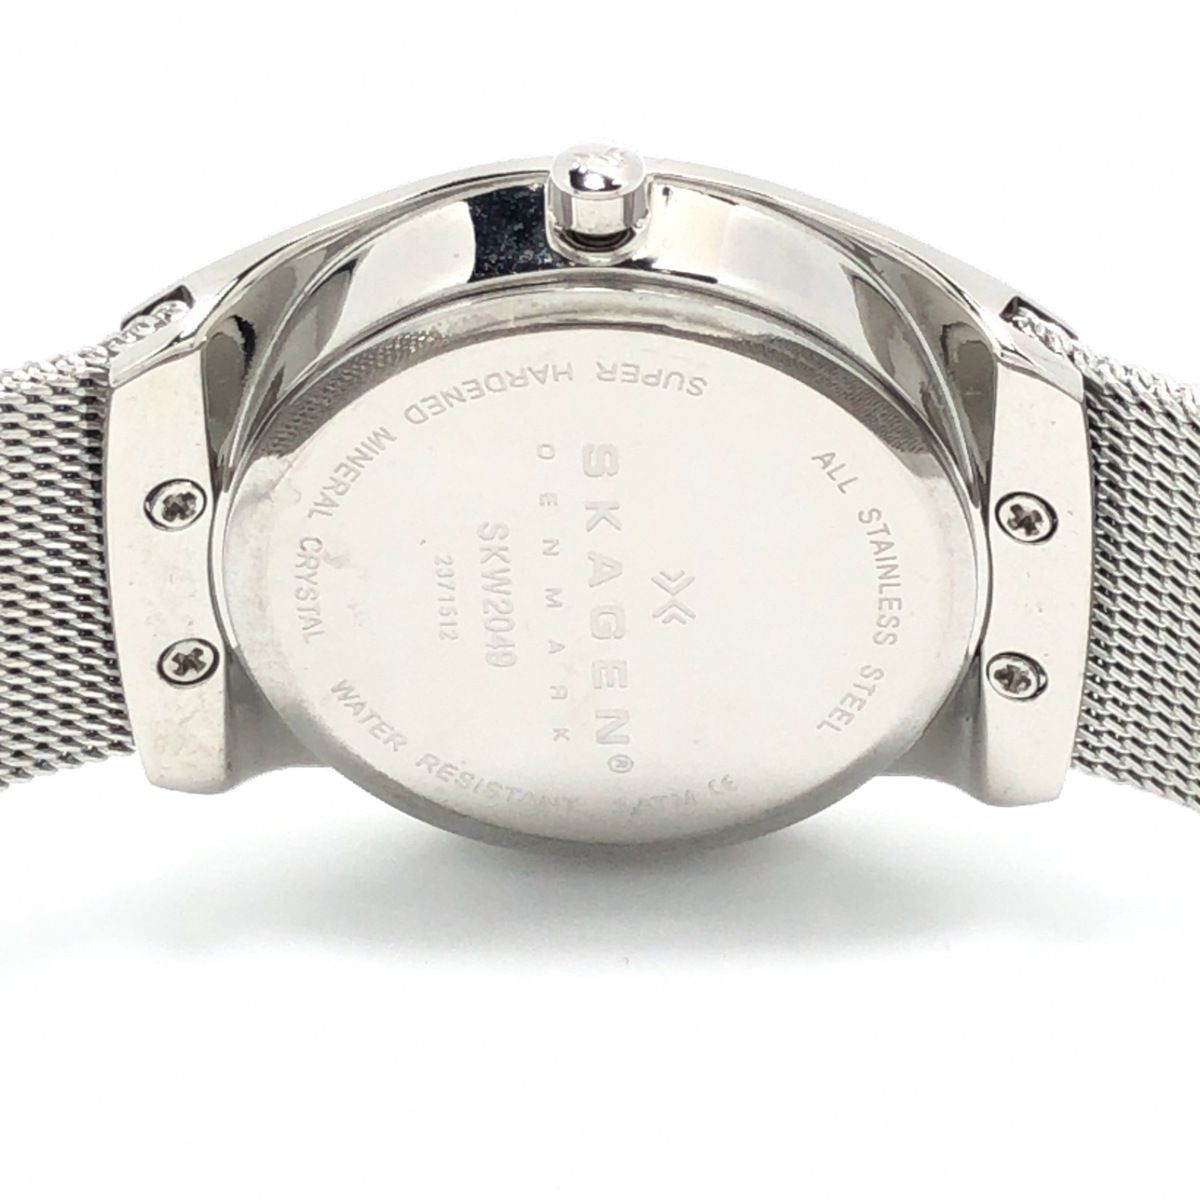 SKAGEN(スカーゲン) 腕時計 - SKW2049 レディース ラインストーン 